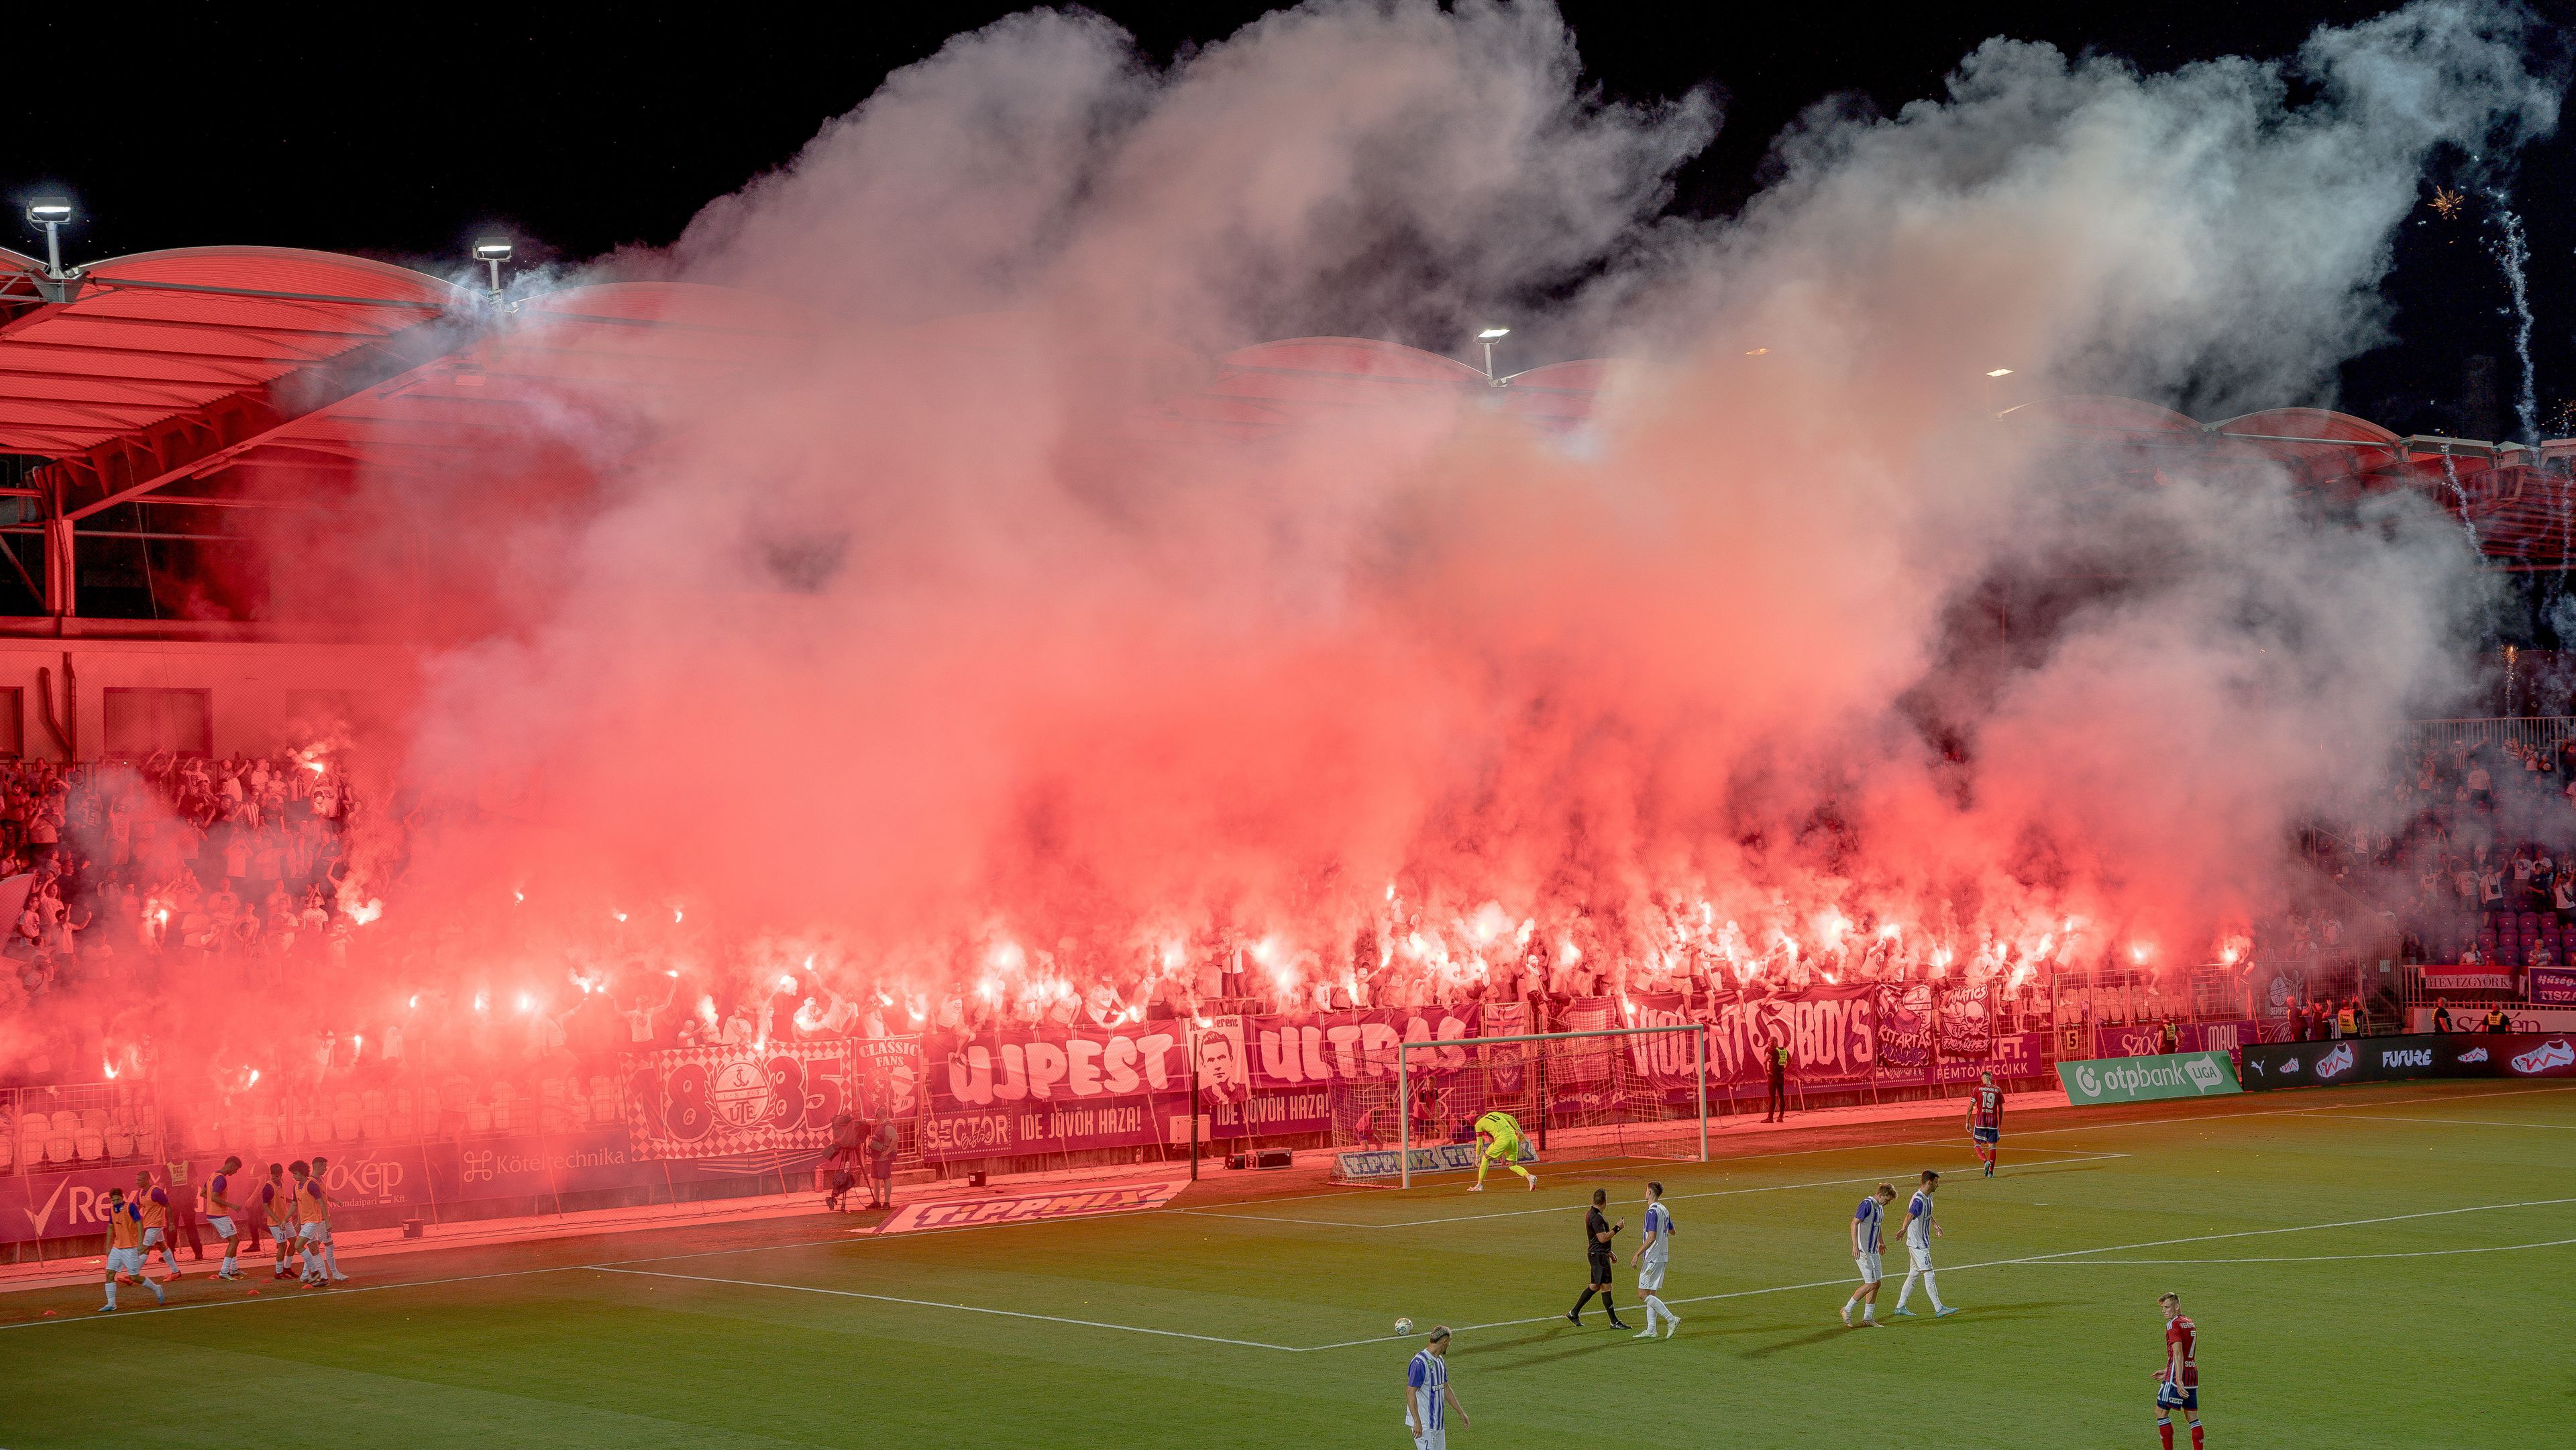 A hazai szurkolók látványos műsorral dobták fel az egyébként sem rossz hangulatot a Szusza Ferenc Stadionban. (Fotók: Cselleng Ádám)